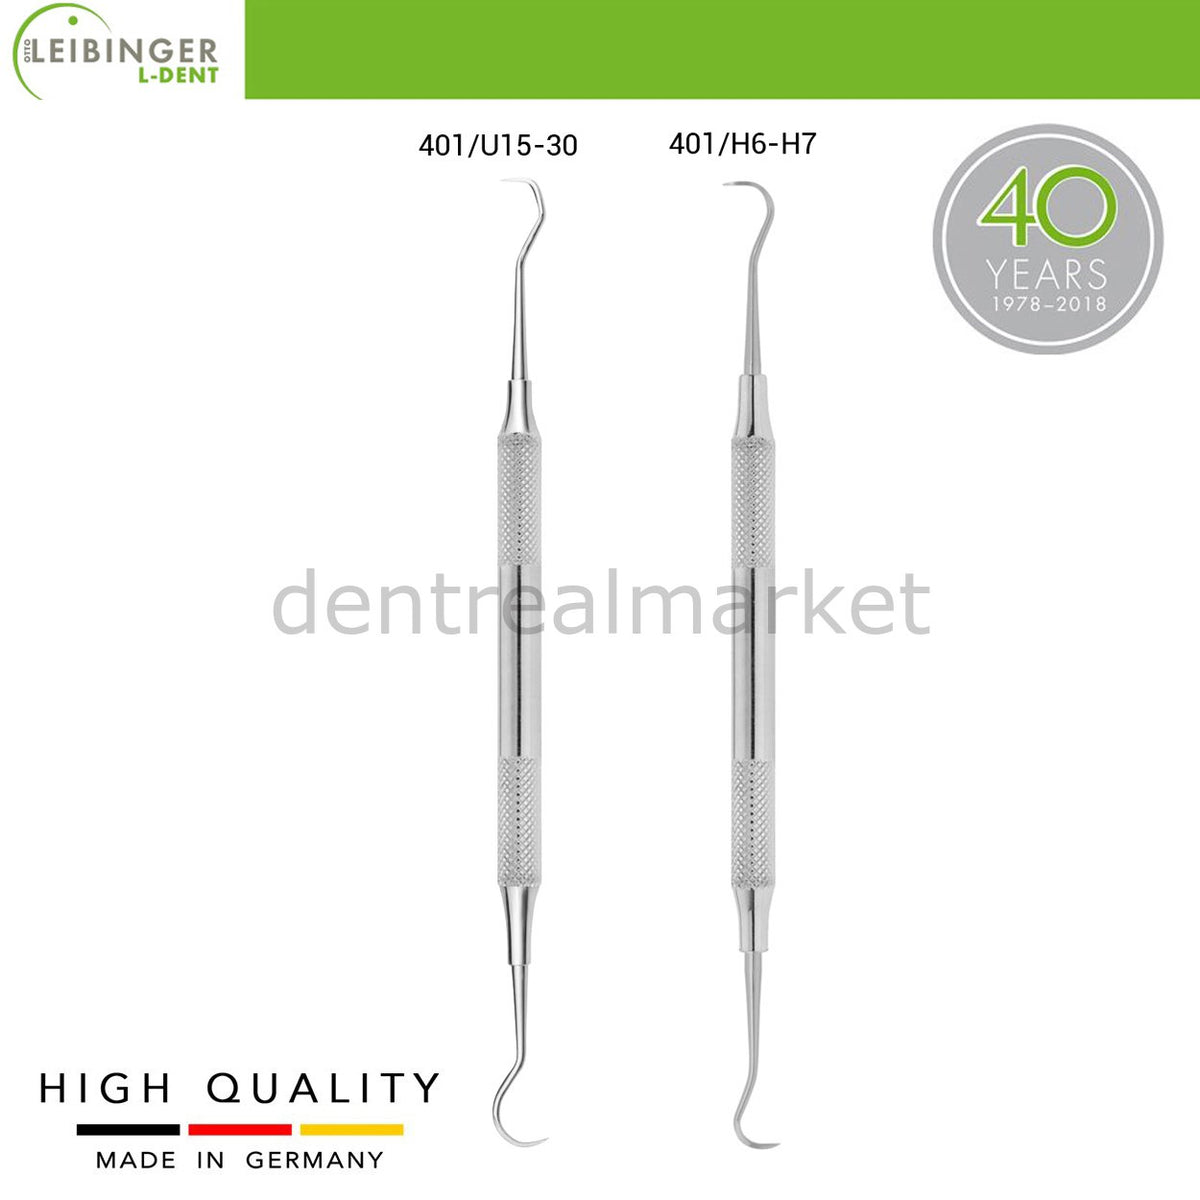 DentrealStore - Leibinger Scaler Towner Set - Dental Instruments